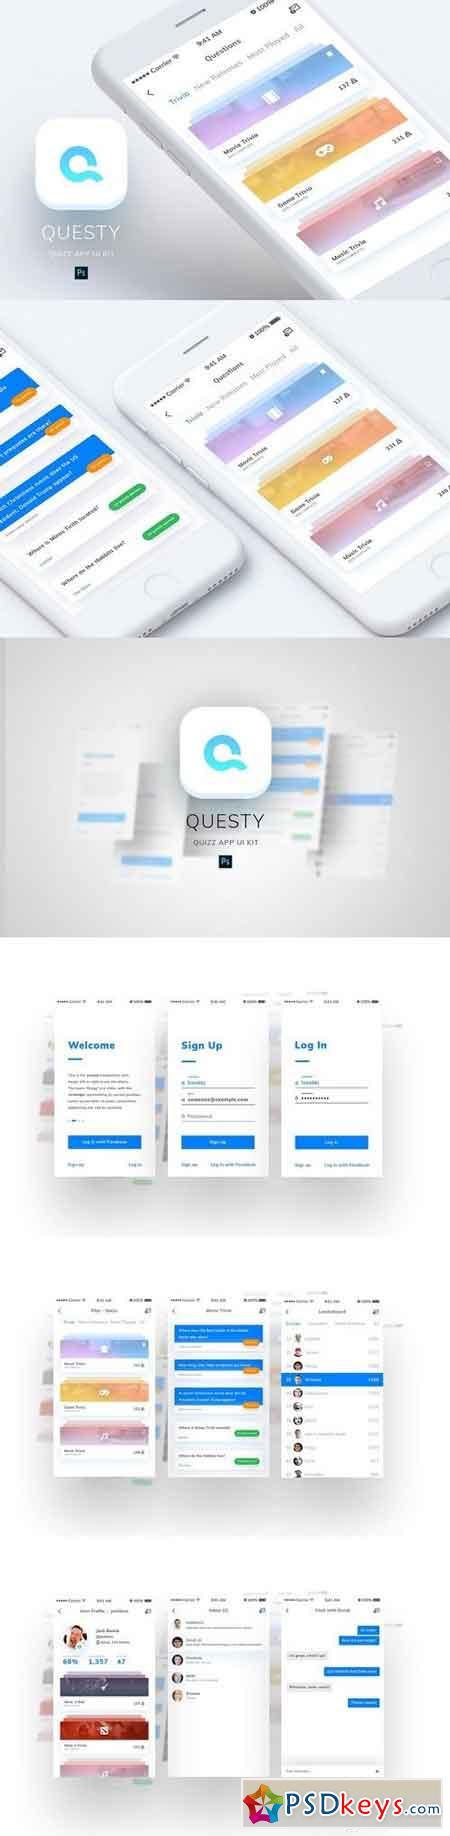 Questy - Quizz Mobile App UI Kit 1916120